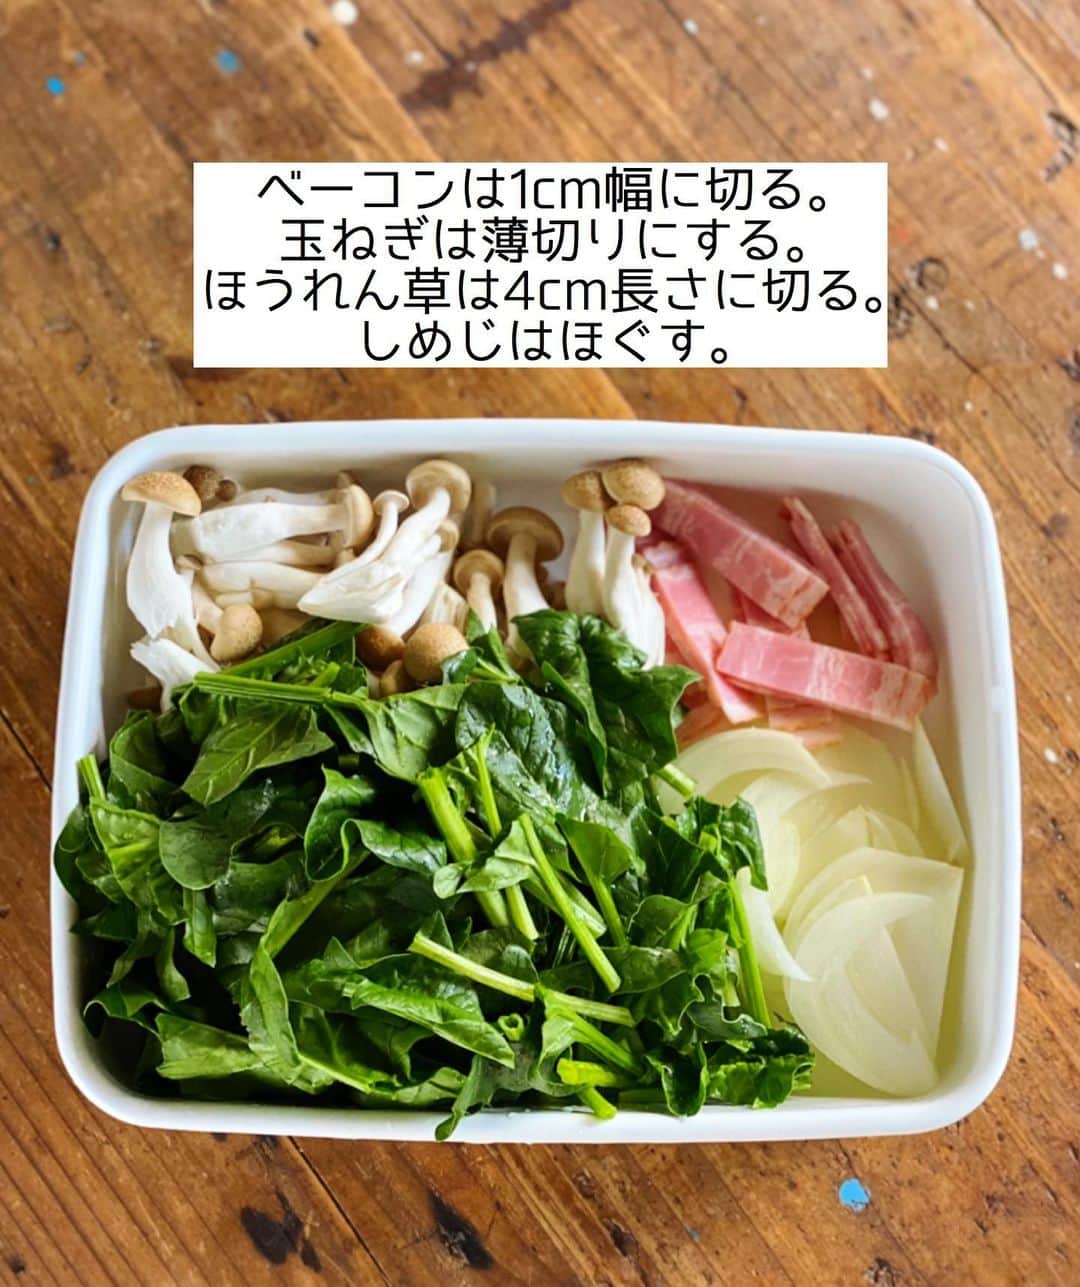 Mizuki【料理ブロガー・簡単レシピ】さんのインスタグラム写真 - (Mizuki【料理ブロガー・簡単レシピ】Instagram)「・﻿ 【#レシピ 】ーーーー﻿ ♡皮なしキッシュ♡﻿ ーーーーーーーーーー﻿ ﻿ ﻿ ﻿ おはようございます(*^^*)﻿ ﻿ 昨日は沢山のコメントをいただき﻿ ありがとうございました（ ; ; ）﻿ 皆さんの温かさに胸がいっぱいです。﻿ ﻿ 今日から料理する自分に戻りますが﻿ またきっと皆さんのお話しもお聞かせ下さい☺️﻿ ﻿ ﻿ ﻿ ﻿ ﻿ さて、今日ご紹介させていただくのは﻿ パイ生地要らずの皮なしキッシュ♩﻿ 普段の食事から﻿ パーティーメニューにも使える﻿ 華やかな卵料理です(*^^*)﻿ ﻿ 今回は大きく作りましたが﻿ ココットに分けて焼いても◎﻿ とっても簡単にできるので﻿ よかったらお試し下さいね♩﻿ ﻿ ﻿ ﻿ ＿＿＿＿＿＿＿＿＿＿＿＿＿＿＿＿＿＿＿＿﻿ 【20cm耐熱皿1つ分】﻿ ベーコン...2枚﻿ 玉ねぎ...1/4個﻿ ほうれん草...1/2束﻿ しめじ...1/2袋﻿ バター...10g﻿ ●卵...2個﻿ ●牛乳...150ml﻿ ●マヨネーズ...大1﻿ ●塩こしょう...少々﻿ ●ピザ用チーズ...50g﻿ ﻿ 1.ベーコンは1cm幅に切る。玉ねぎは薄切りにする。ほうれん草は4cm長さに切る。しめじはほぐす。﻿ 2.フライパンにバターを中火で熱し、ベーコンと玉ねぎを炒める。玉ねぎがしんなりしたらほうれん草としめじも加えてさっと炒め、火を止めて粗熱を取る。﻿ 3.ボウルに●を入れて混ぜ、2も加えて混ぜる。﻿ 4.耐熱皿に入れ、200度に予熱したオーブンで20〜25分焼く。﻿ ￣￣￣￣￣￣￣￣￣￣￣￣￣￣￣￣￣￣￣￣﻿ ﻿ ﻿ ﻿ 《ポイント》﻿ ♦︎私は20×20×4cmサイズの耐熱皿を使用しました♩﻿ ♦︎(お好みで)耐熱皿にバターを塗っておくと風味がよくなり、くっつきにくくなります♩ ♦︎ココットに分けて作る場合は焼き時間を短縮して下さい♩﻿ ﻿ ﻿ ﻿ ﻿ ﻿ ﻿ ﻿ ﻿ 📕新刊予約開始しました📕﻿ 【ラクしておいしい！#1品晩ごはん 】﻿ ￣￣￣￣￣￣￣￣￣￣￣￣￣￣￣￣￣﻿ 私たちだってヘトヘトな日がある•••﻿ 毎日何品も作っていられない•••﻿ もうごはんに悩みたくない😢﻿ そう思うことってありませんか？﻿ そんな時、1品ごはんはいかがでしょう？﻿ というご提案です✨﻿ ﻿ ﻿ 【1品ごはん】は﻿ 副菜いらずで全てがシンプル！﻿ ￣￣￣￣￣￣￣￣￣￣￣￣￣￣￣￣￣￣﻿ 一品つくるだけでいいから﻿ 献立を考えなくてよし！﻿ ￣￣￣￣￣￣￣￣￣￣￣￣￣￣￣￣￣￣﻿ 悩まない、疲れない、﻿ 気力や時間がなくてもなんとかなる！﻿ ￣￣￣￣￣￣￣￣￣￣￣￣￣￣￣￣￣￣﻿ そんな頼りになる﻿ 便利なお助けごはんです☺️💕﻿ (ハイライトに🔗貼っています✨)﻿ ￣￣￣￣￣￣￣￣￣￣￣￣￣￣￣￣￣﻿ ﻿ ﻿ ﻿ ﻿ ﻿ ⭐️発売中⭐️﻿ ＿＿＿＿＿＿＿＿＿＿＿＿＿＿＿＿＿＿﻿ しんどくない献立、考えました♩﻿ \15分でいただきます/﻿ 📕#Mizukiの2品献立 📕﻿ ﻿ 和食をもっとカジュアルに♩﻿ \毎日のごはんがラクになる/﻿ 📘#Mizukiの今どき和食 📘﻿ ﻿ ホケミレシピの決定版♩﻿ \はじめてでも失敗しない/﻿ 📙ホットケーキミックスのお菓子 📙﻿ ﻿ NHKまる得マガジンテキスト☆﻿ ホットケーキミックスで﻿ 📗絶品おやつ&意外なランチ📗﻿ ￣￣￣￣￣￣￣￣￣￣￣￣￣￣￣￣￣￣﻿ ﻿ ﻿ ﻿ ＿＿＿＿＿＿＿＿＿＿＿＿＿＿＿＿＿＿﻿ レシピを作って下さった際や﻿ レシピ本についてのご投稿には﻿ タグ付け( @mizuki_31cafe )して﻿ お知らせいただけると嬉しいです😊💕﻿ ￣￣￣￣￣￣￣￣￣￣￣￣￣￣￣￣￣￣﻿ ﻿ ﻿ ﻿ ﻿ #キッシュ#卵料理#生クリームなし#クリスマス#Mizuki#簡単レシピ#時短レシピ#節約レシピ#料理#フーディーテーブル#マカロニメイト#おうちごはん#デリスタグラマー#料理好きな人と繋がりたい#食べ物#料理記録#おうちごはんlover#写真好きな人と繋がりたい#foodpic#cooking#recipe#lin_stagrammer#foodporn#yummy#f52grams#皮なしキッシュm」12月18日 8時10分 - mizuki_31cafe